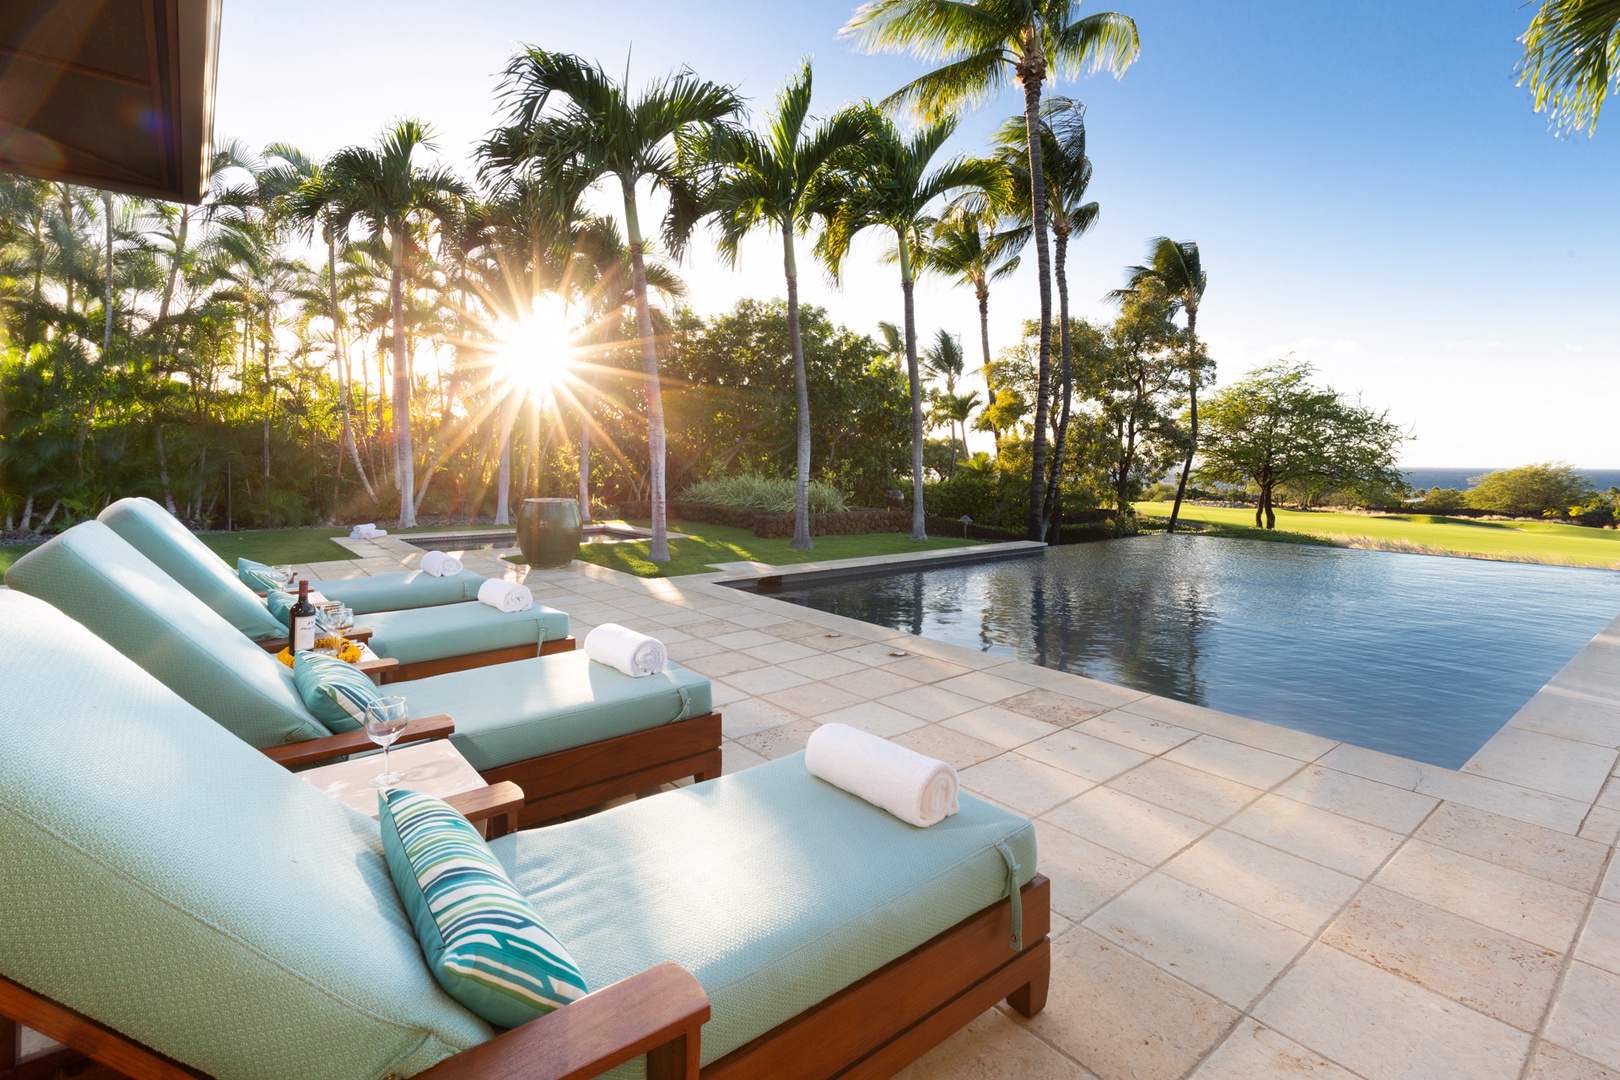 Kailua Kona Vacation Rentals, 4BD Hainoa Estate (102) at Four Seasons Resort at Hualalai - An oasis of tranquility